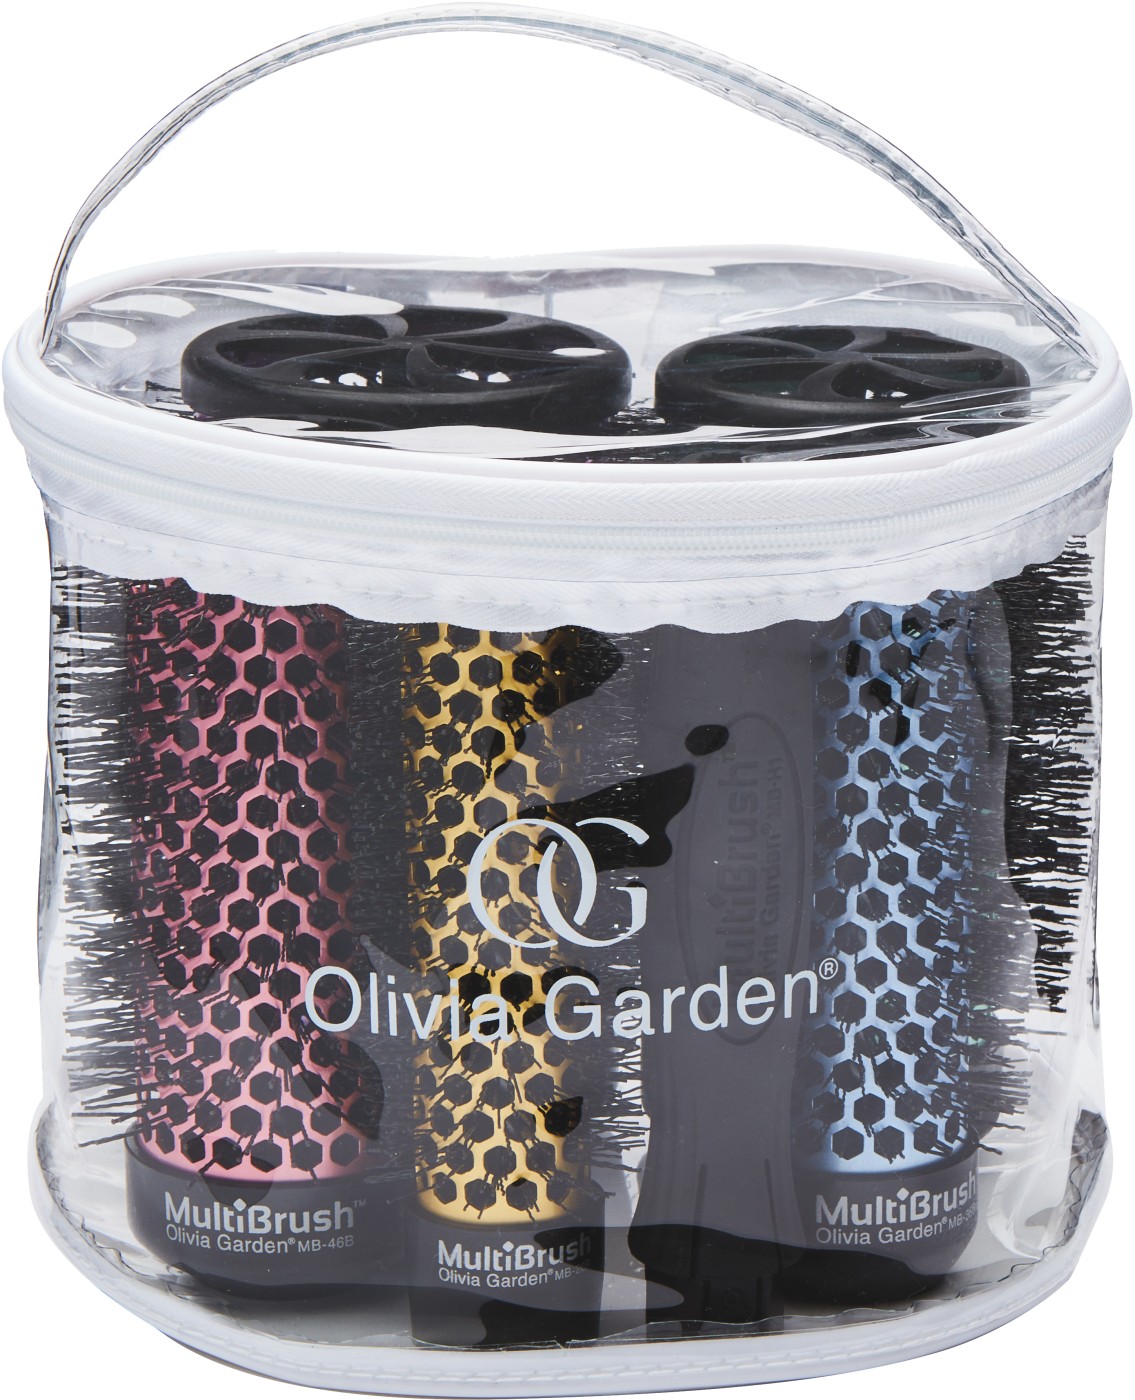  Olivia Garden Multibrush Detachable Barrel & Handle Starter Kit 